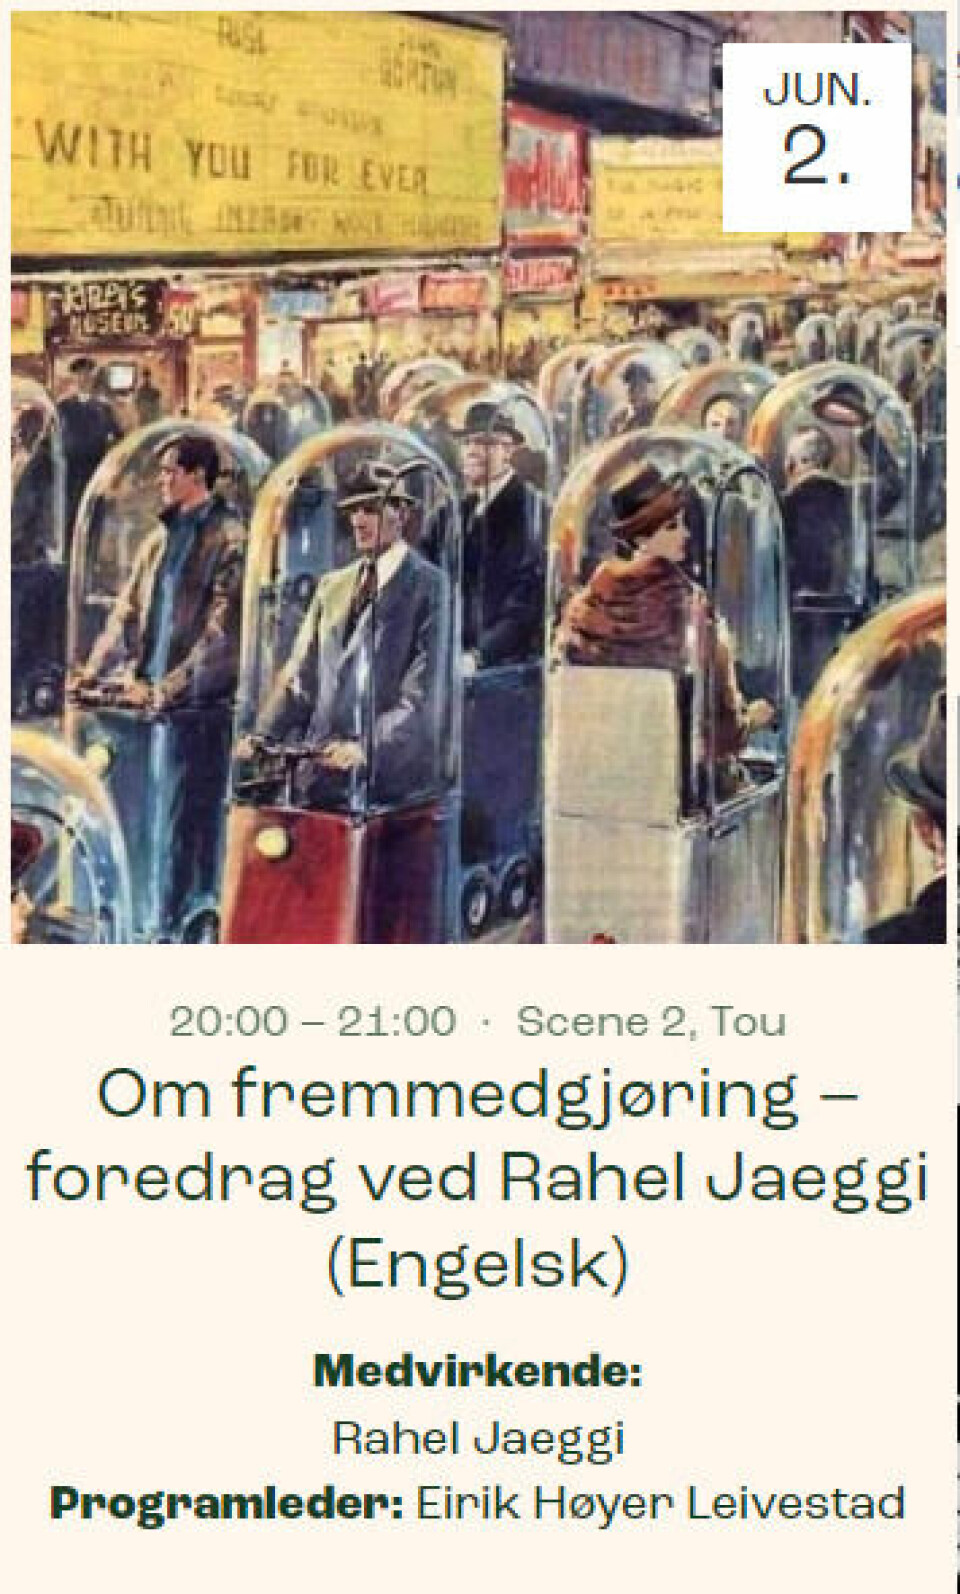 Rahel Jaeggi vil holde foredrag på festivalen Wonderful World i Stavanger den 2.juni.